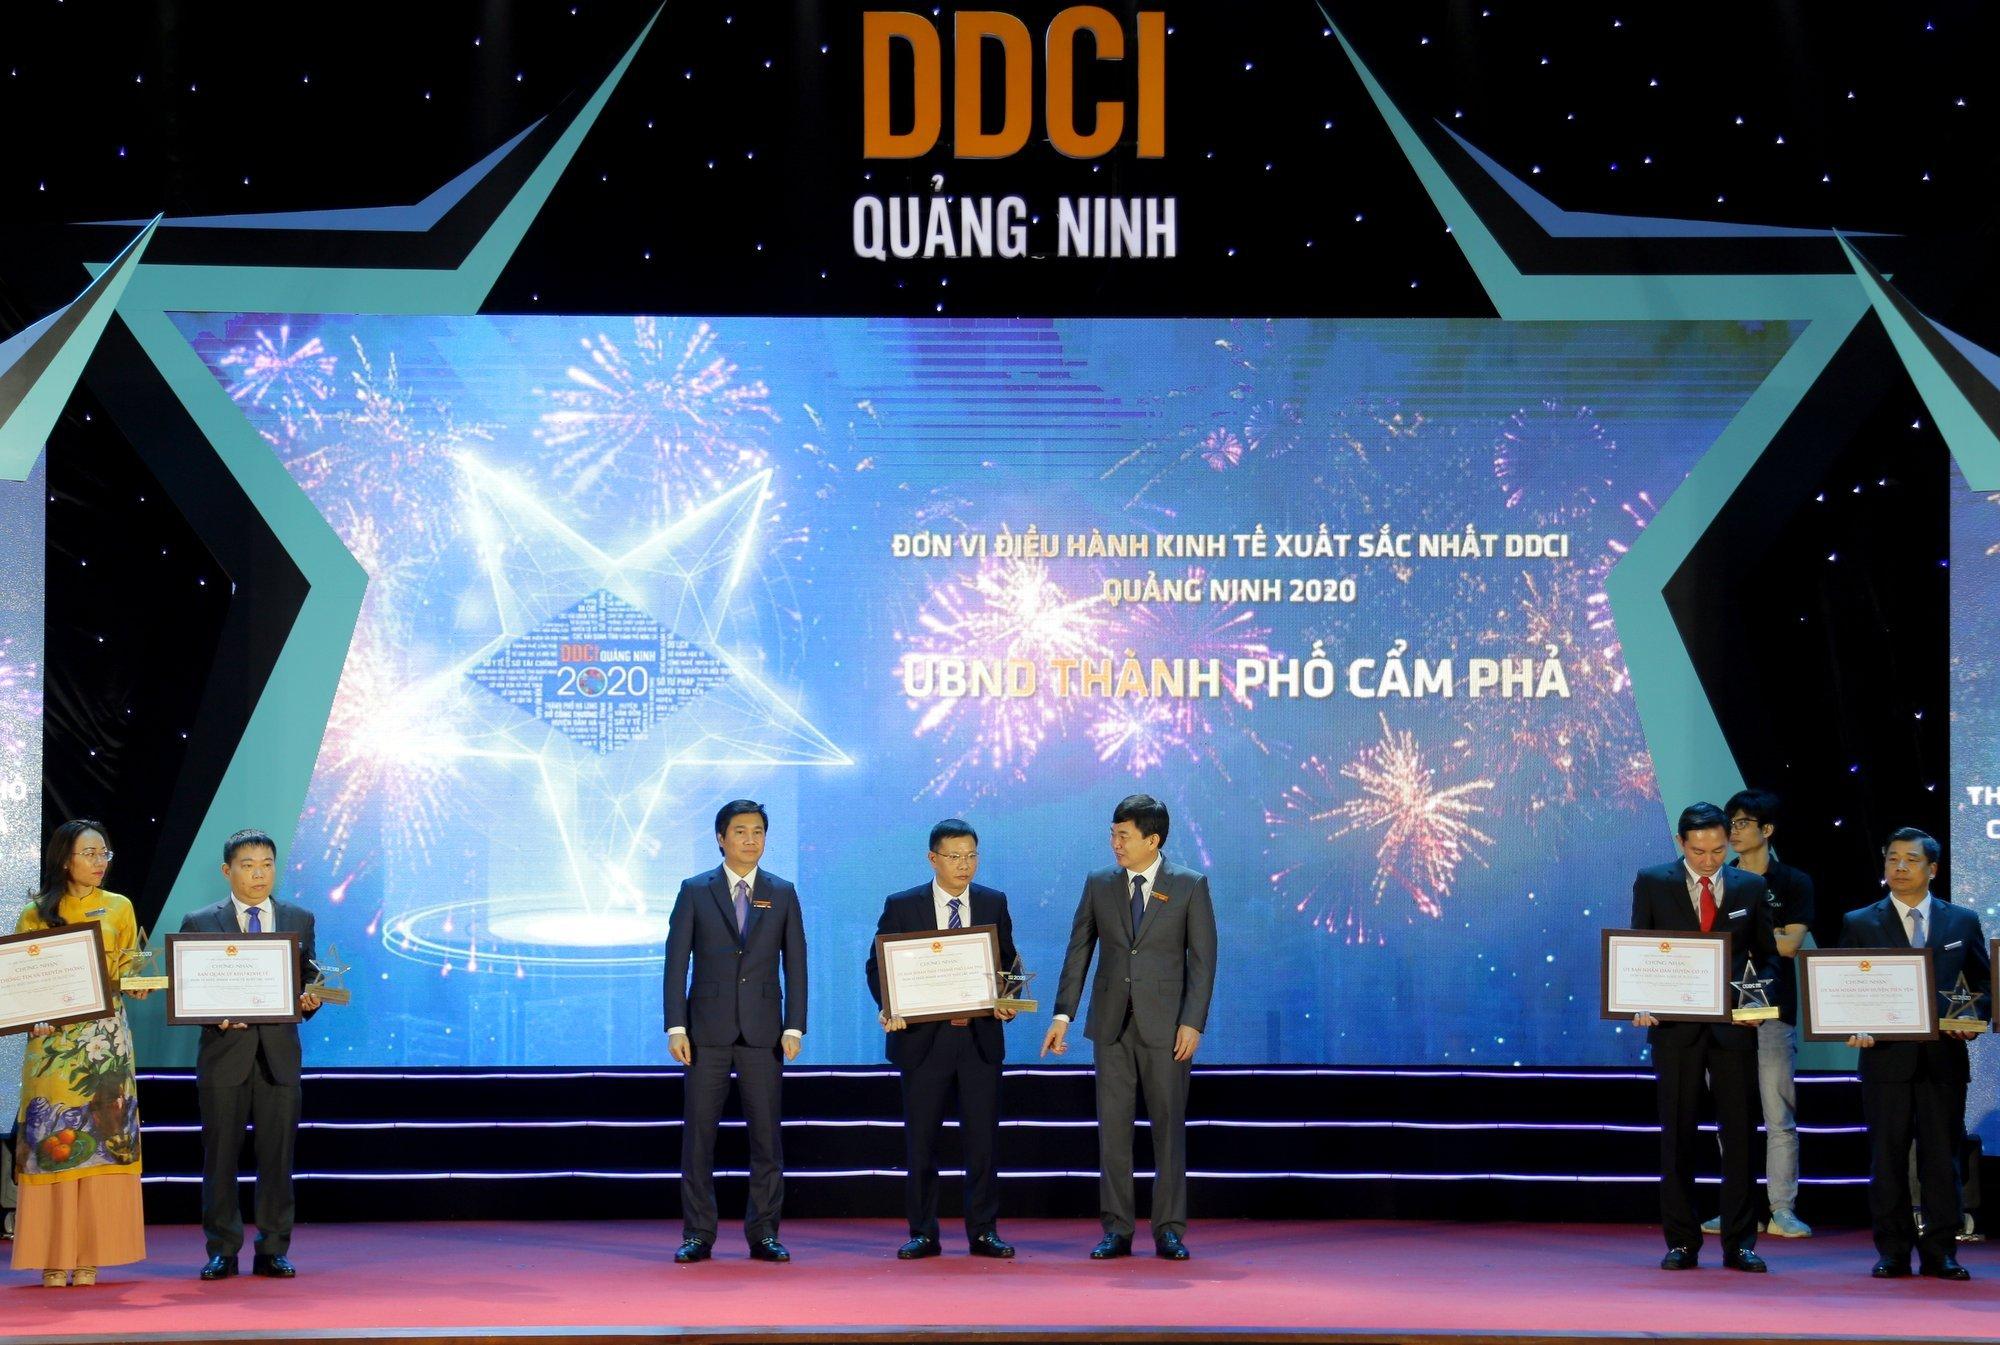 Các đồng chí lãnh đạo tỉnh trao giấy chứng nhận và kỷ niệm chương cho TP Cẩm Phả, đơn vị dẫn đầu bảng xếp hạng chỉ số DDCI Quảng Ninh 2020 khối địa phương. Ảnh: Minh Hà